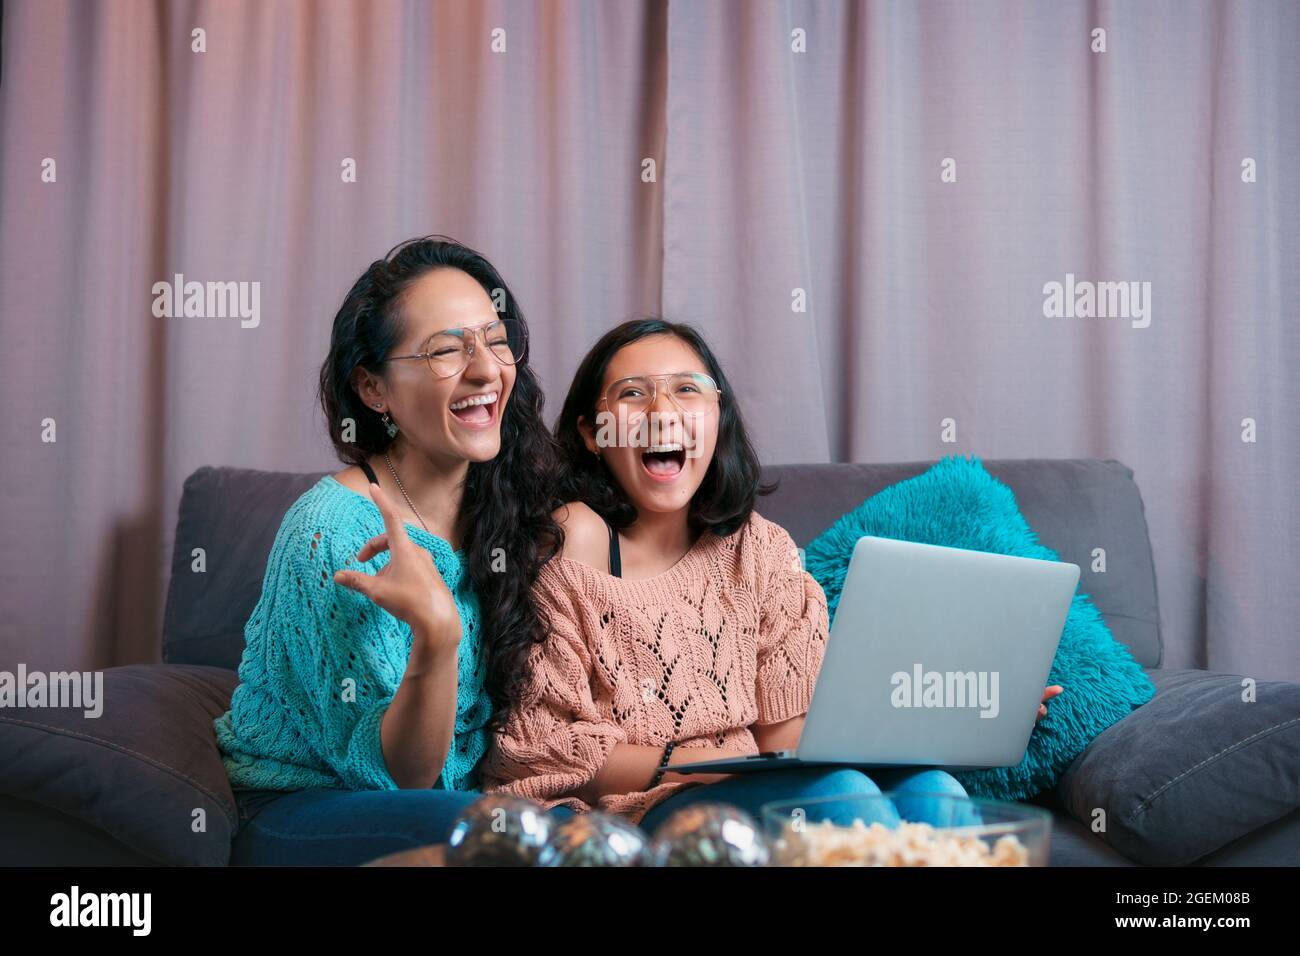 Vista horizontal de una madre y una hija usando un portátil, ambos riendo en voz alta por lo que han visto en la pantalla de la computadora Foto de stock